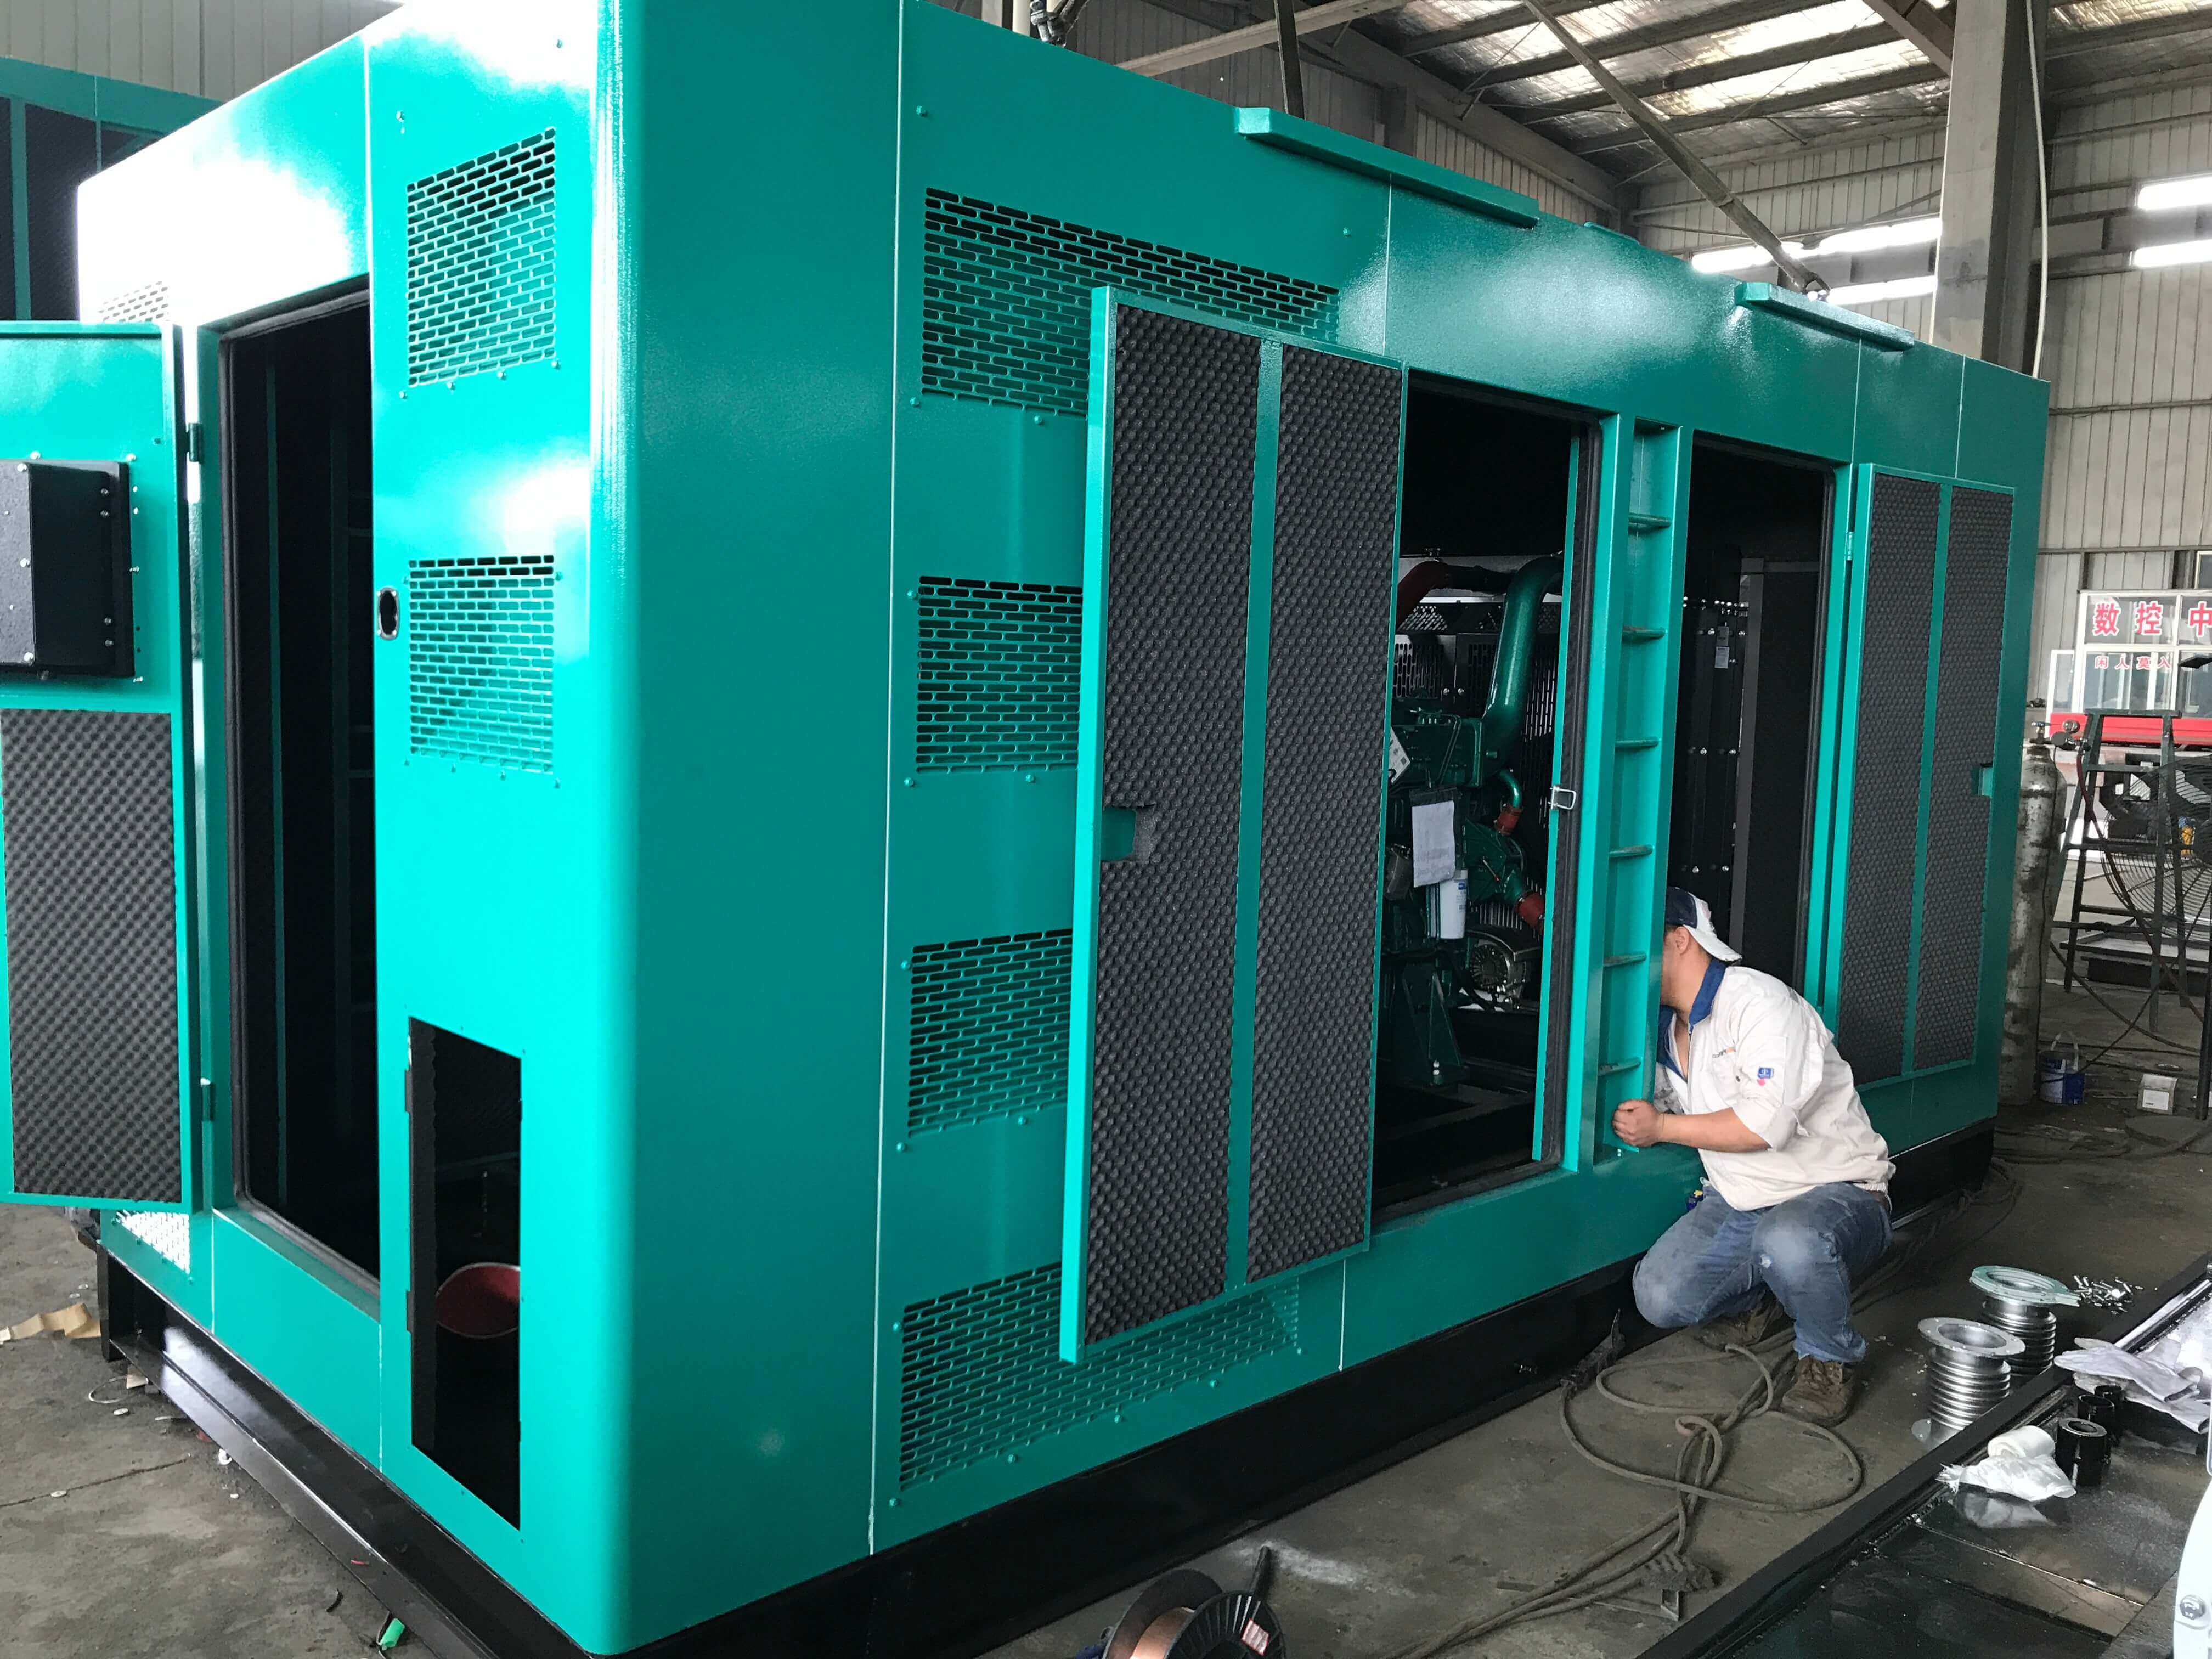 安徽宿州某电力公司订购200KW静音柴油发电机组一台